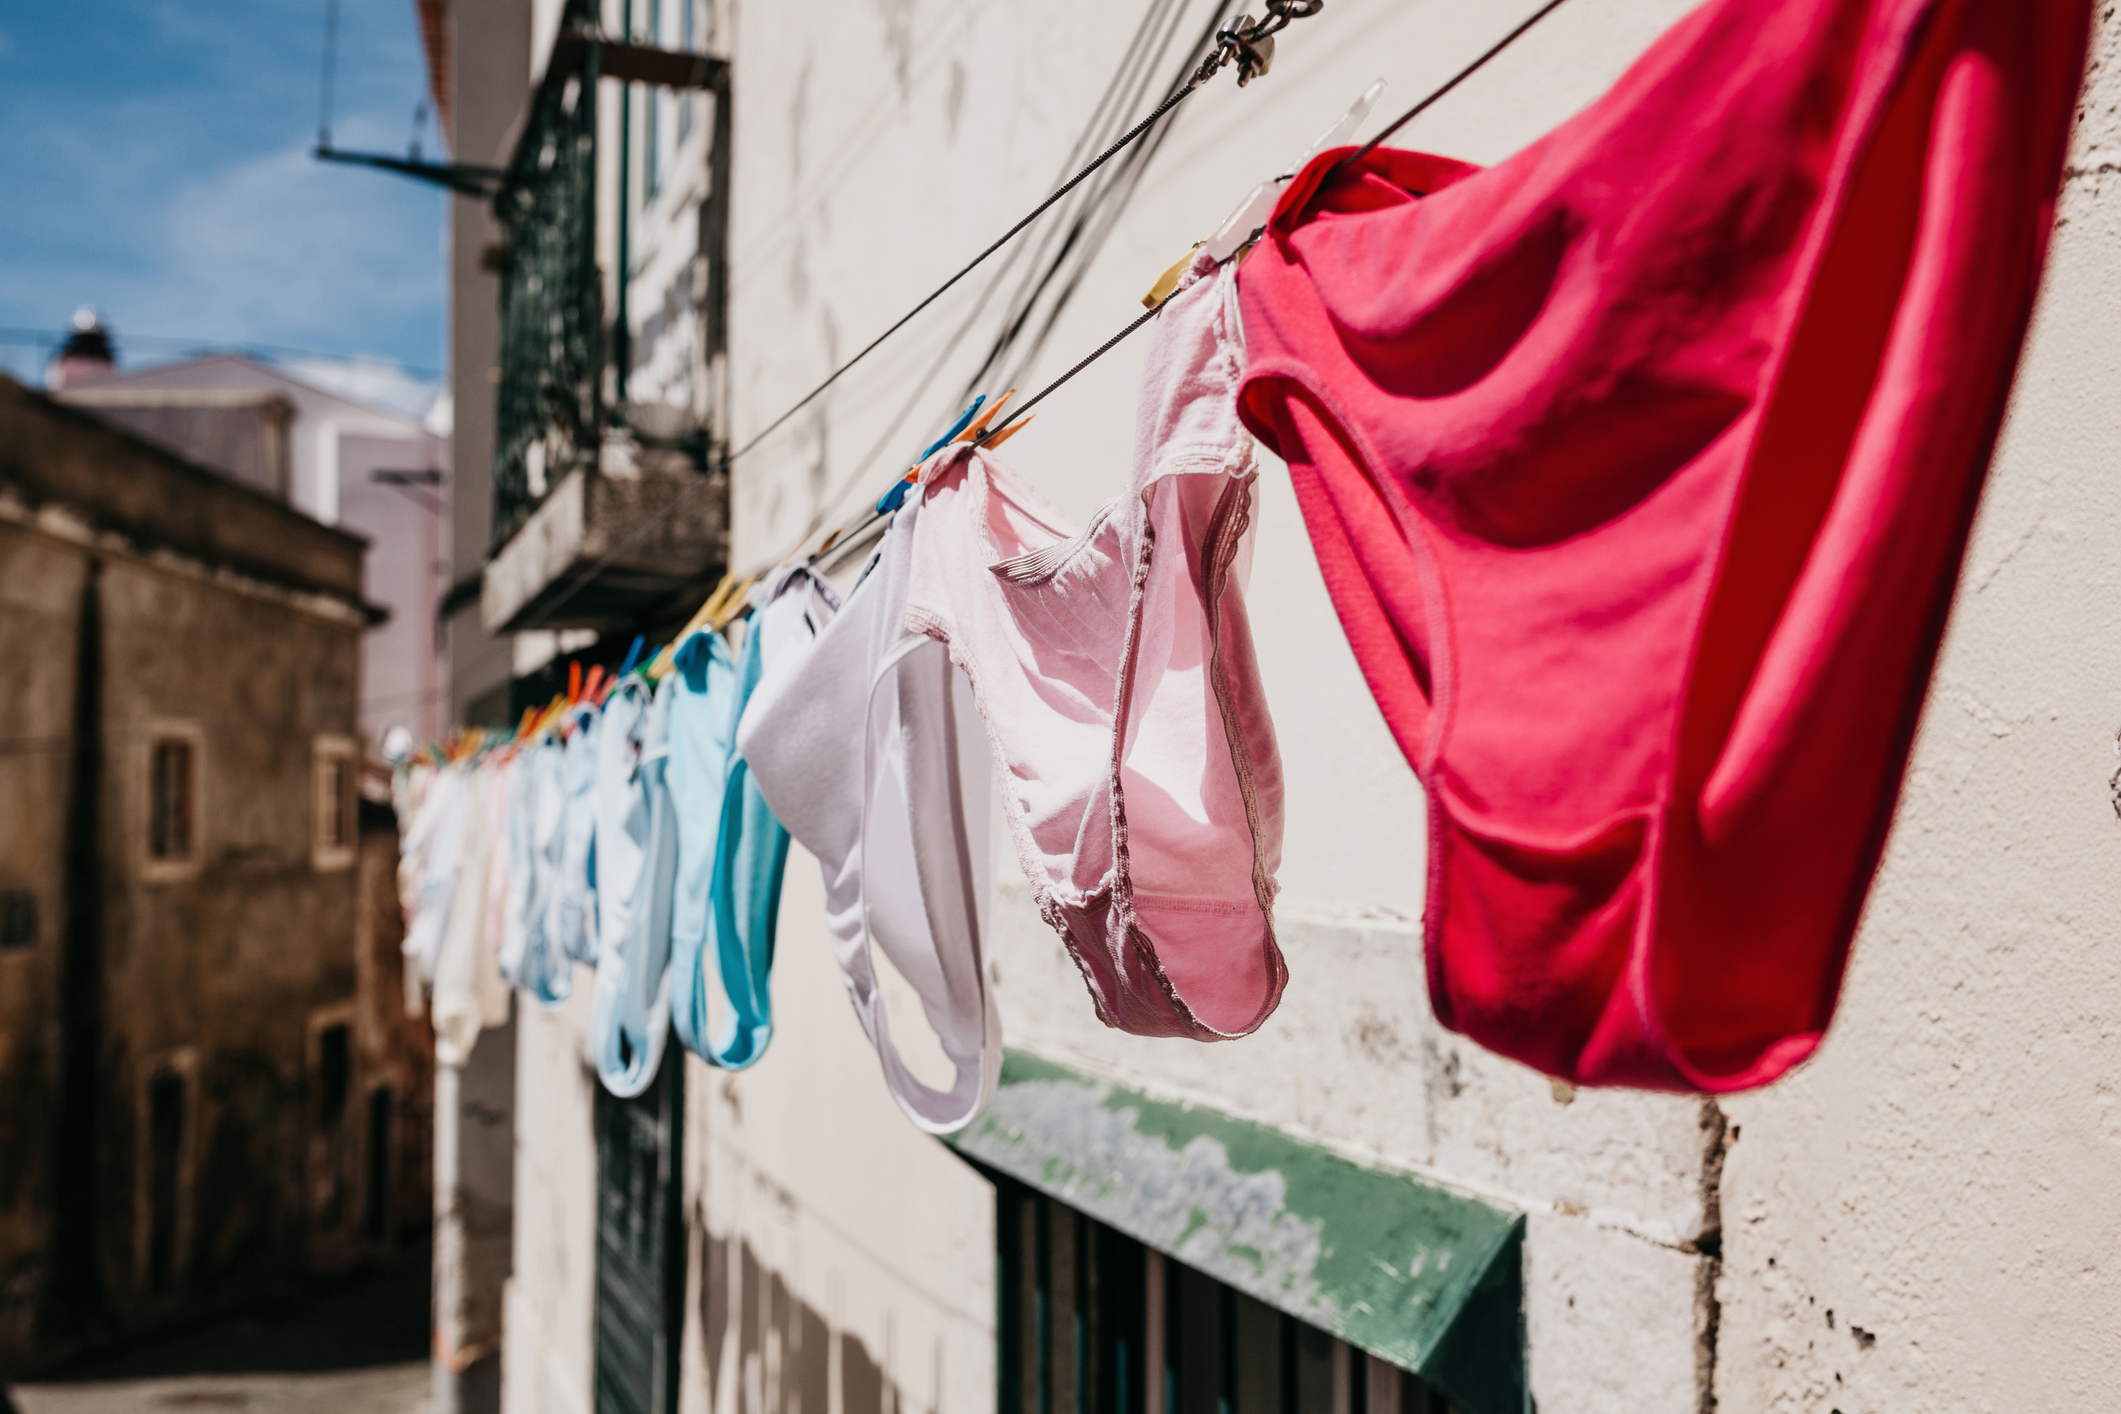 nuez subterraneo Pequeño Tu ropa interior recién lavada sigue llena de bacterias: cómo eliminarlas |  Business Insider España